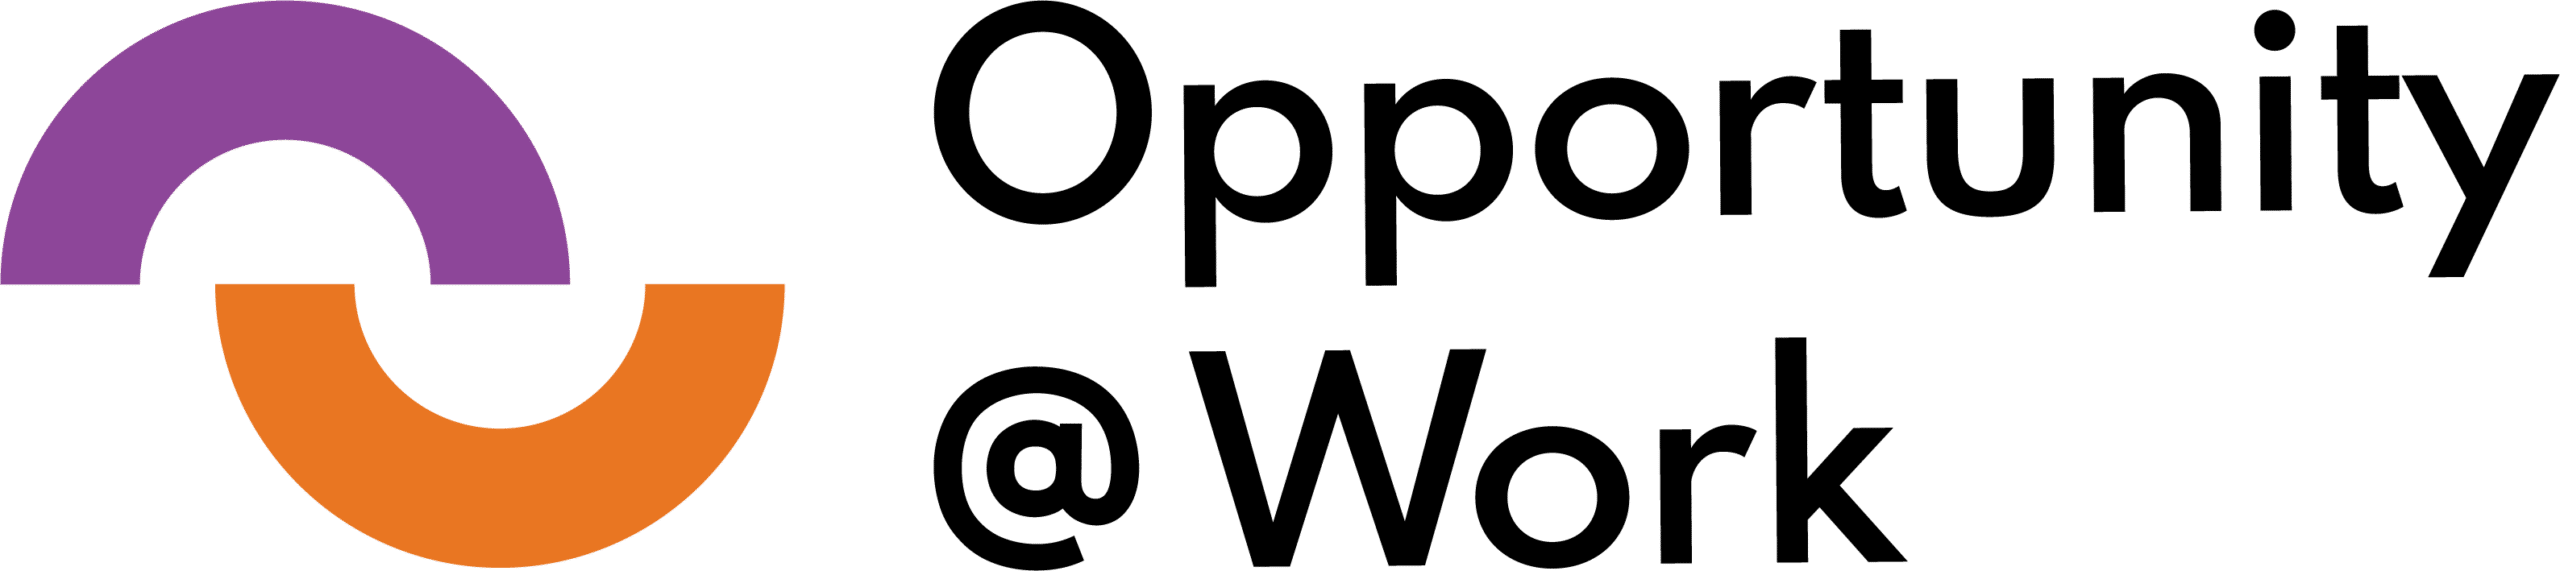 OpportuntiytaWork_logo